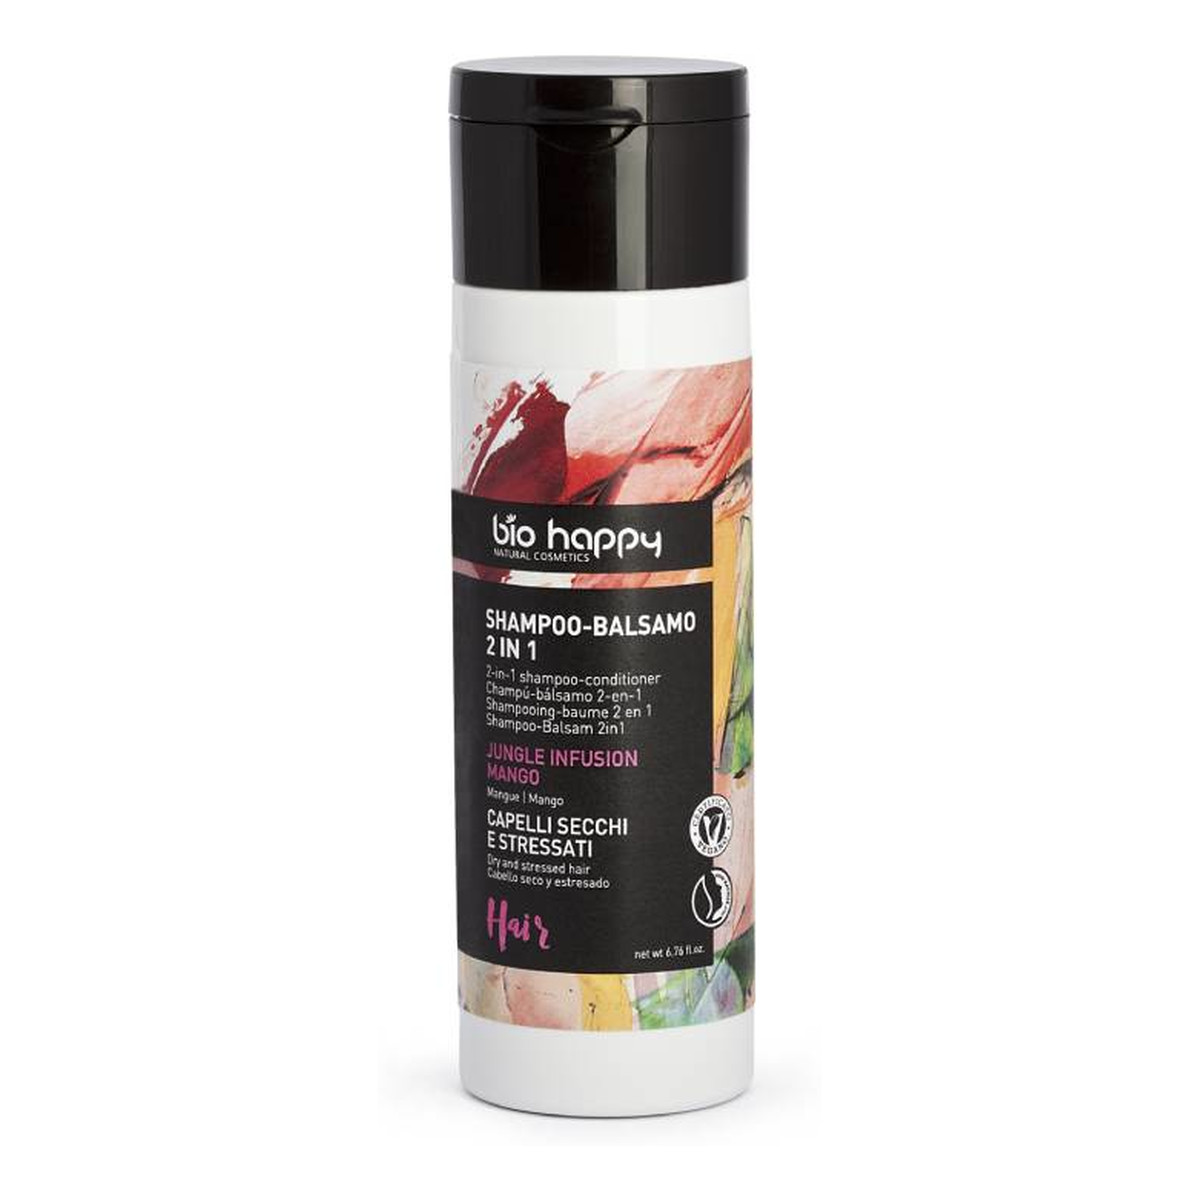 bio happy 2-in-1 shampoo-conditioner szampon i odżywka do włosów 2w1 jungle infusion mango 200ml